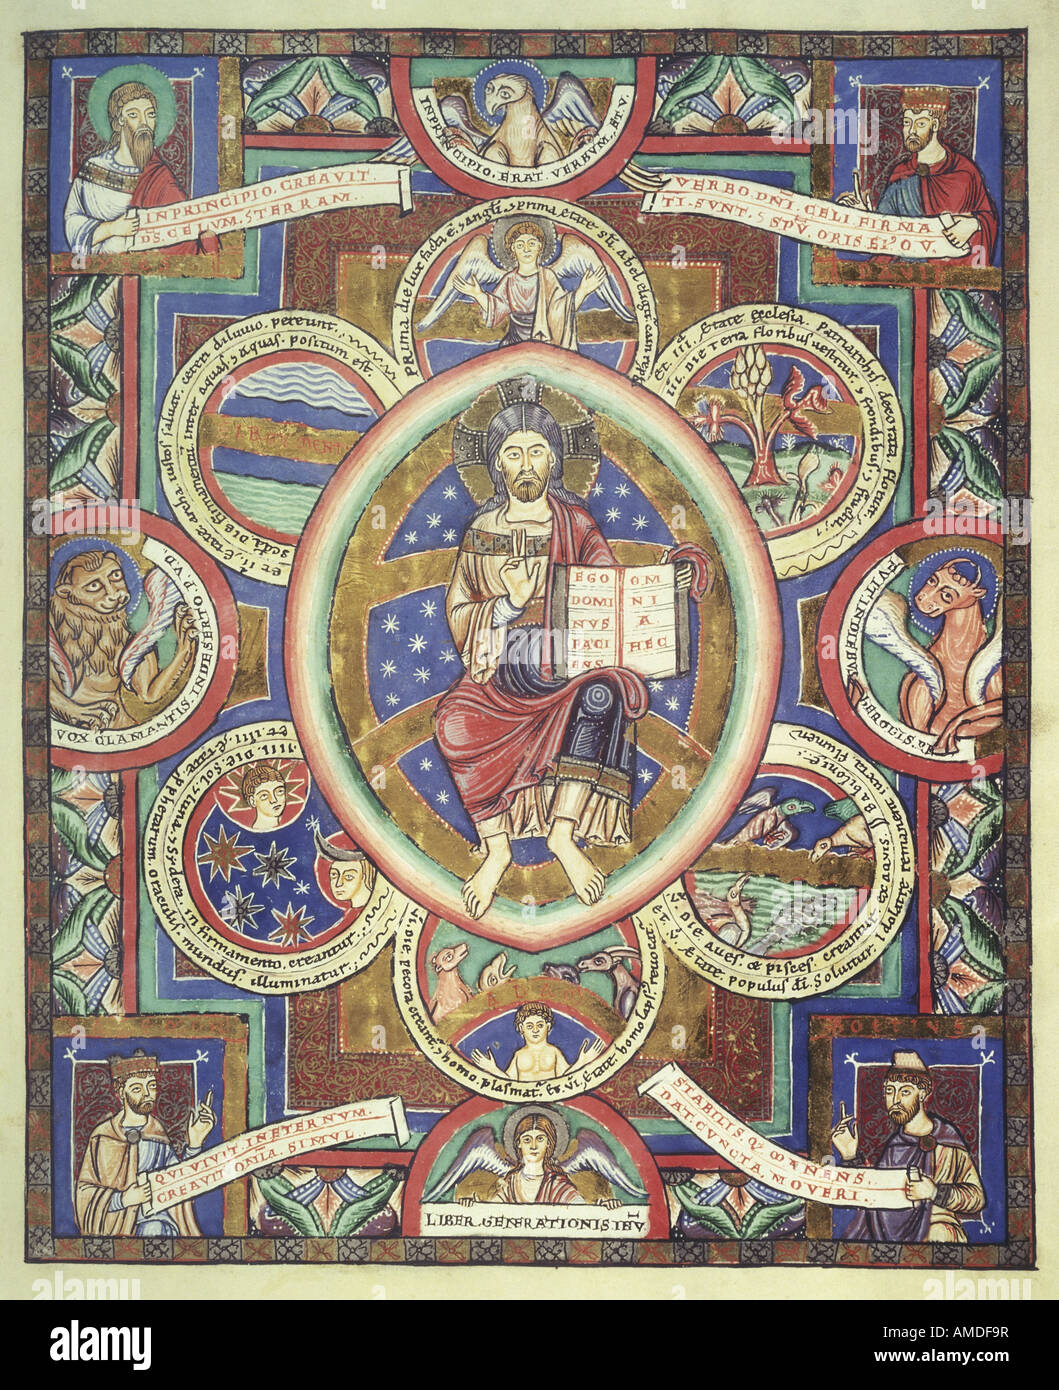 Bildende Kunst, Liturgie, Heinrichs des Löwen (1129 - 6.8.1195), beleuchtet, Manuskript, Schaffung von Erde, von Mönch Heriman, Kloster Stockfoto